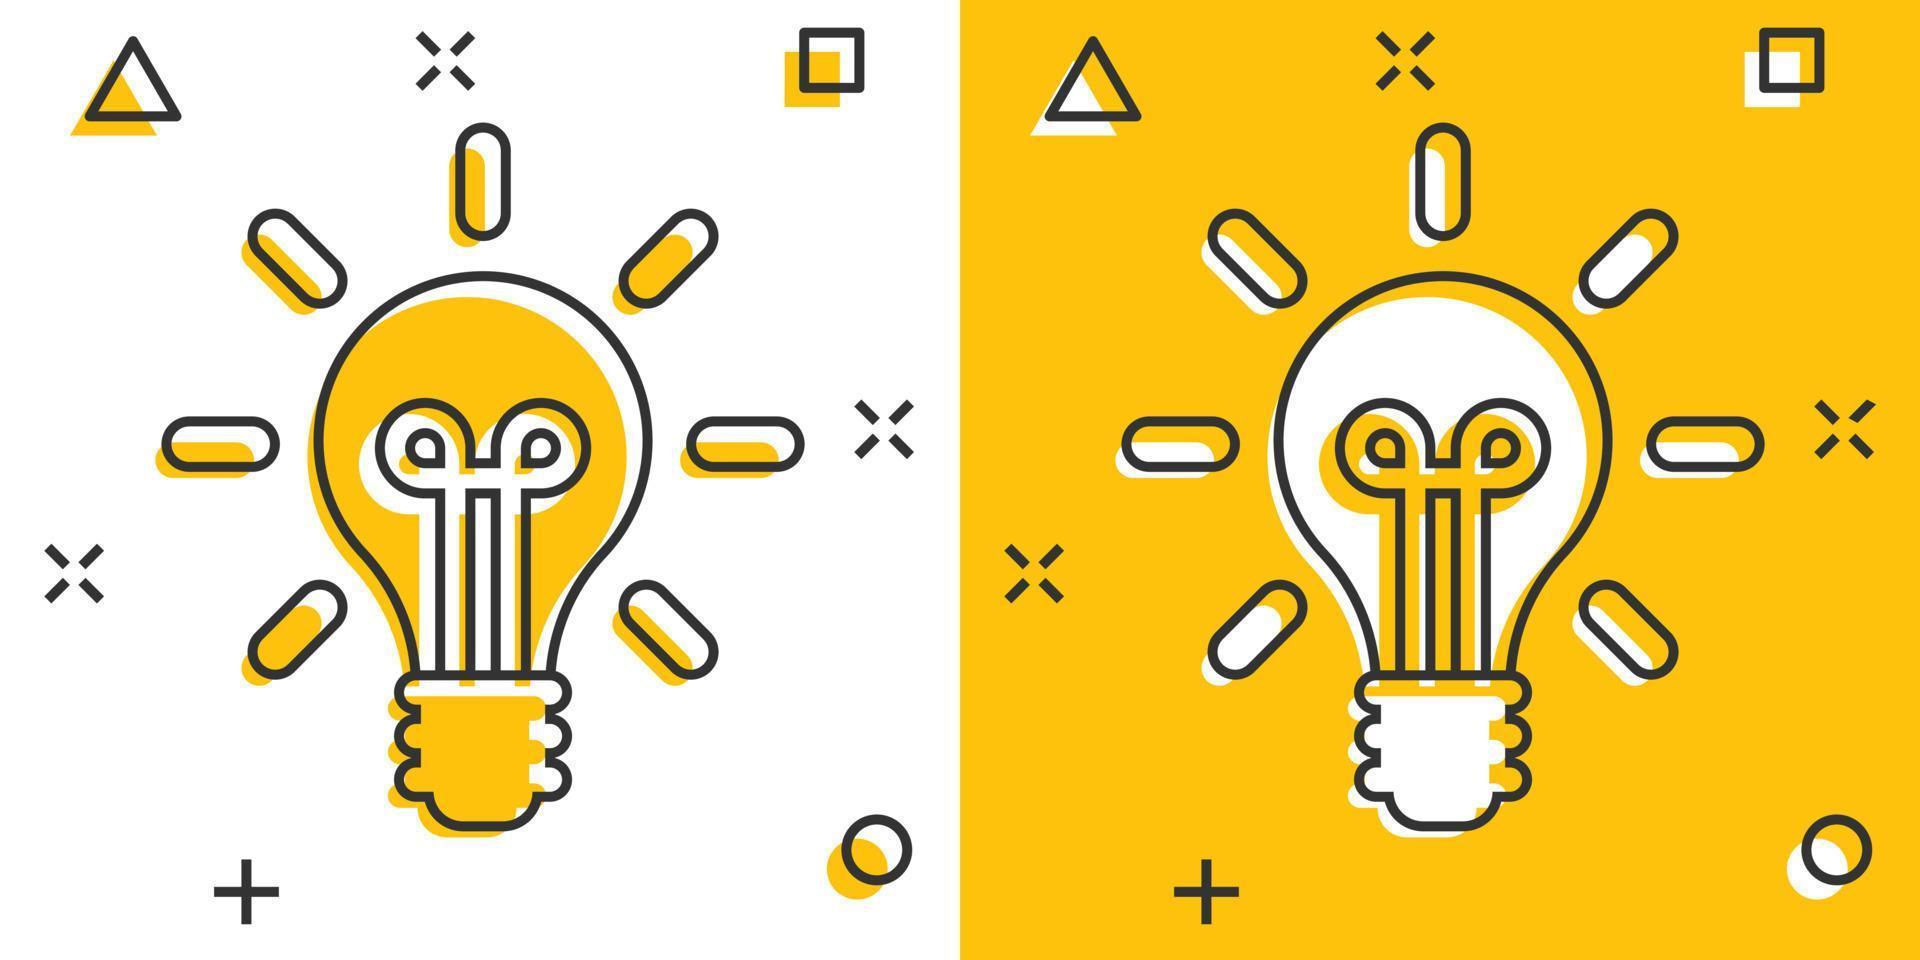 ljus Glödlampa ikon i komisk stil. glödlampa vektor tecknad serie illustration piktogram. lampa aning företag begrepp stänk effekt.